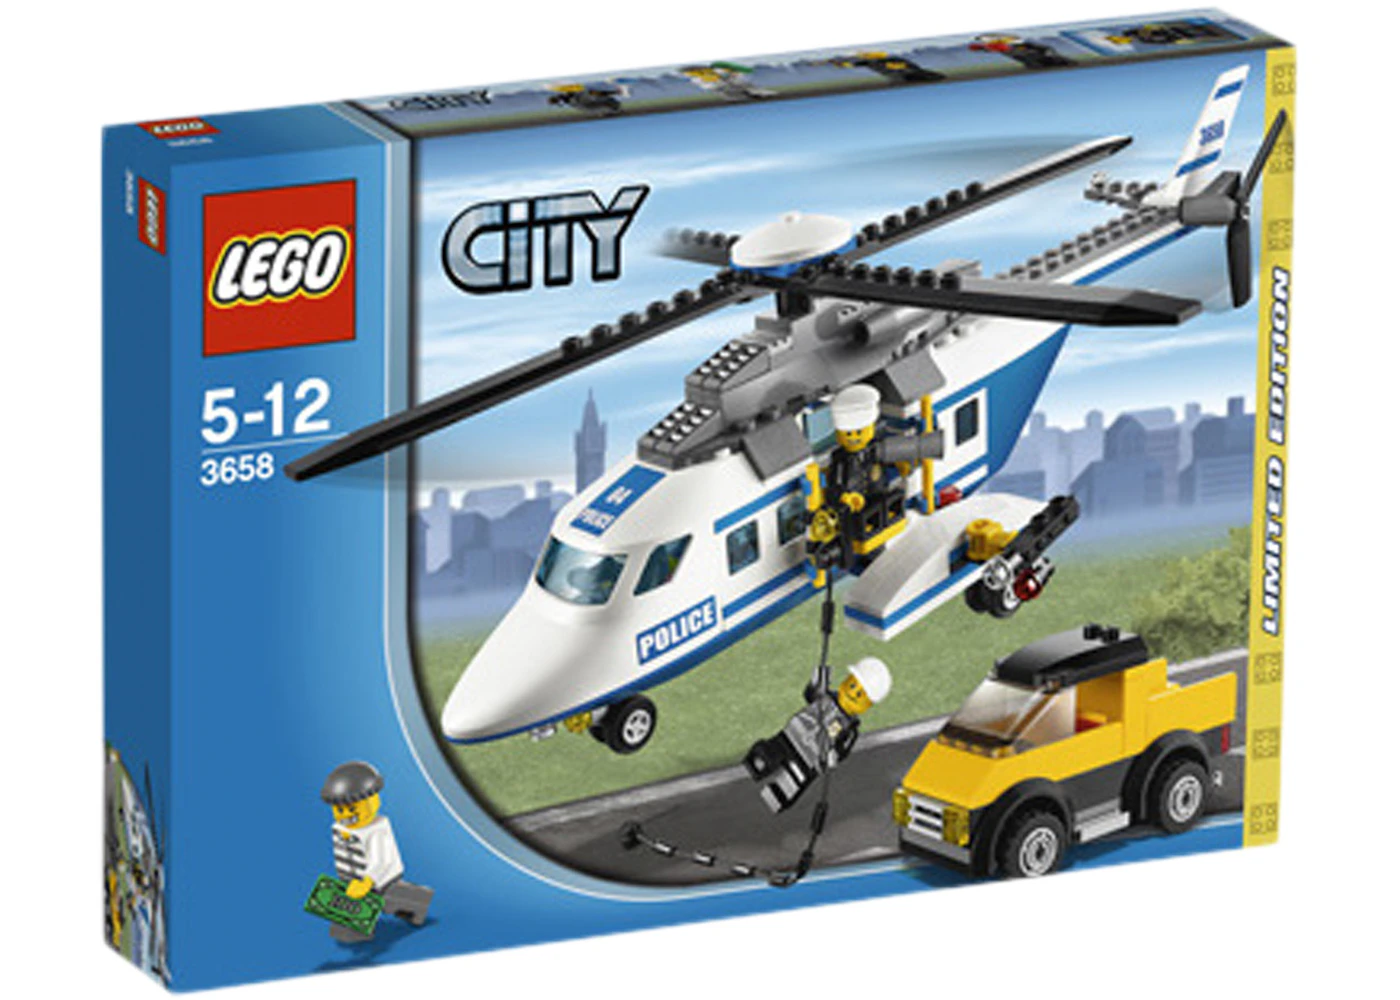 Omvendt Fortæl mig tragt LEGO City Police Helicopter Set 3658 - US